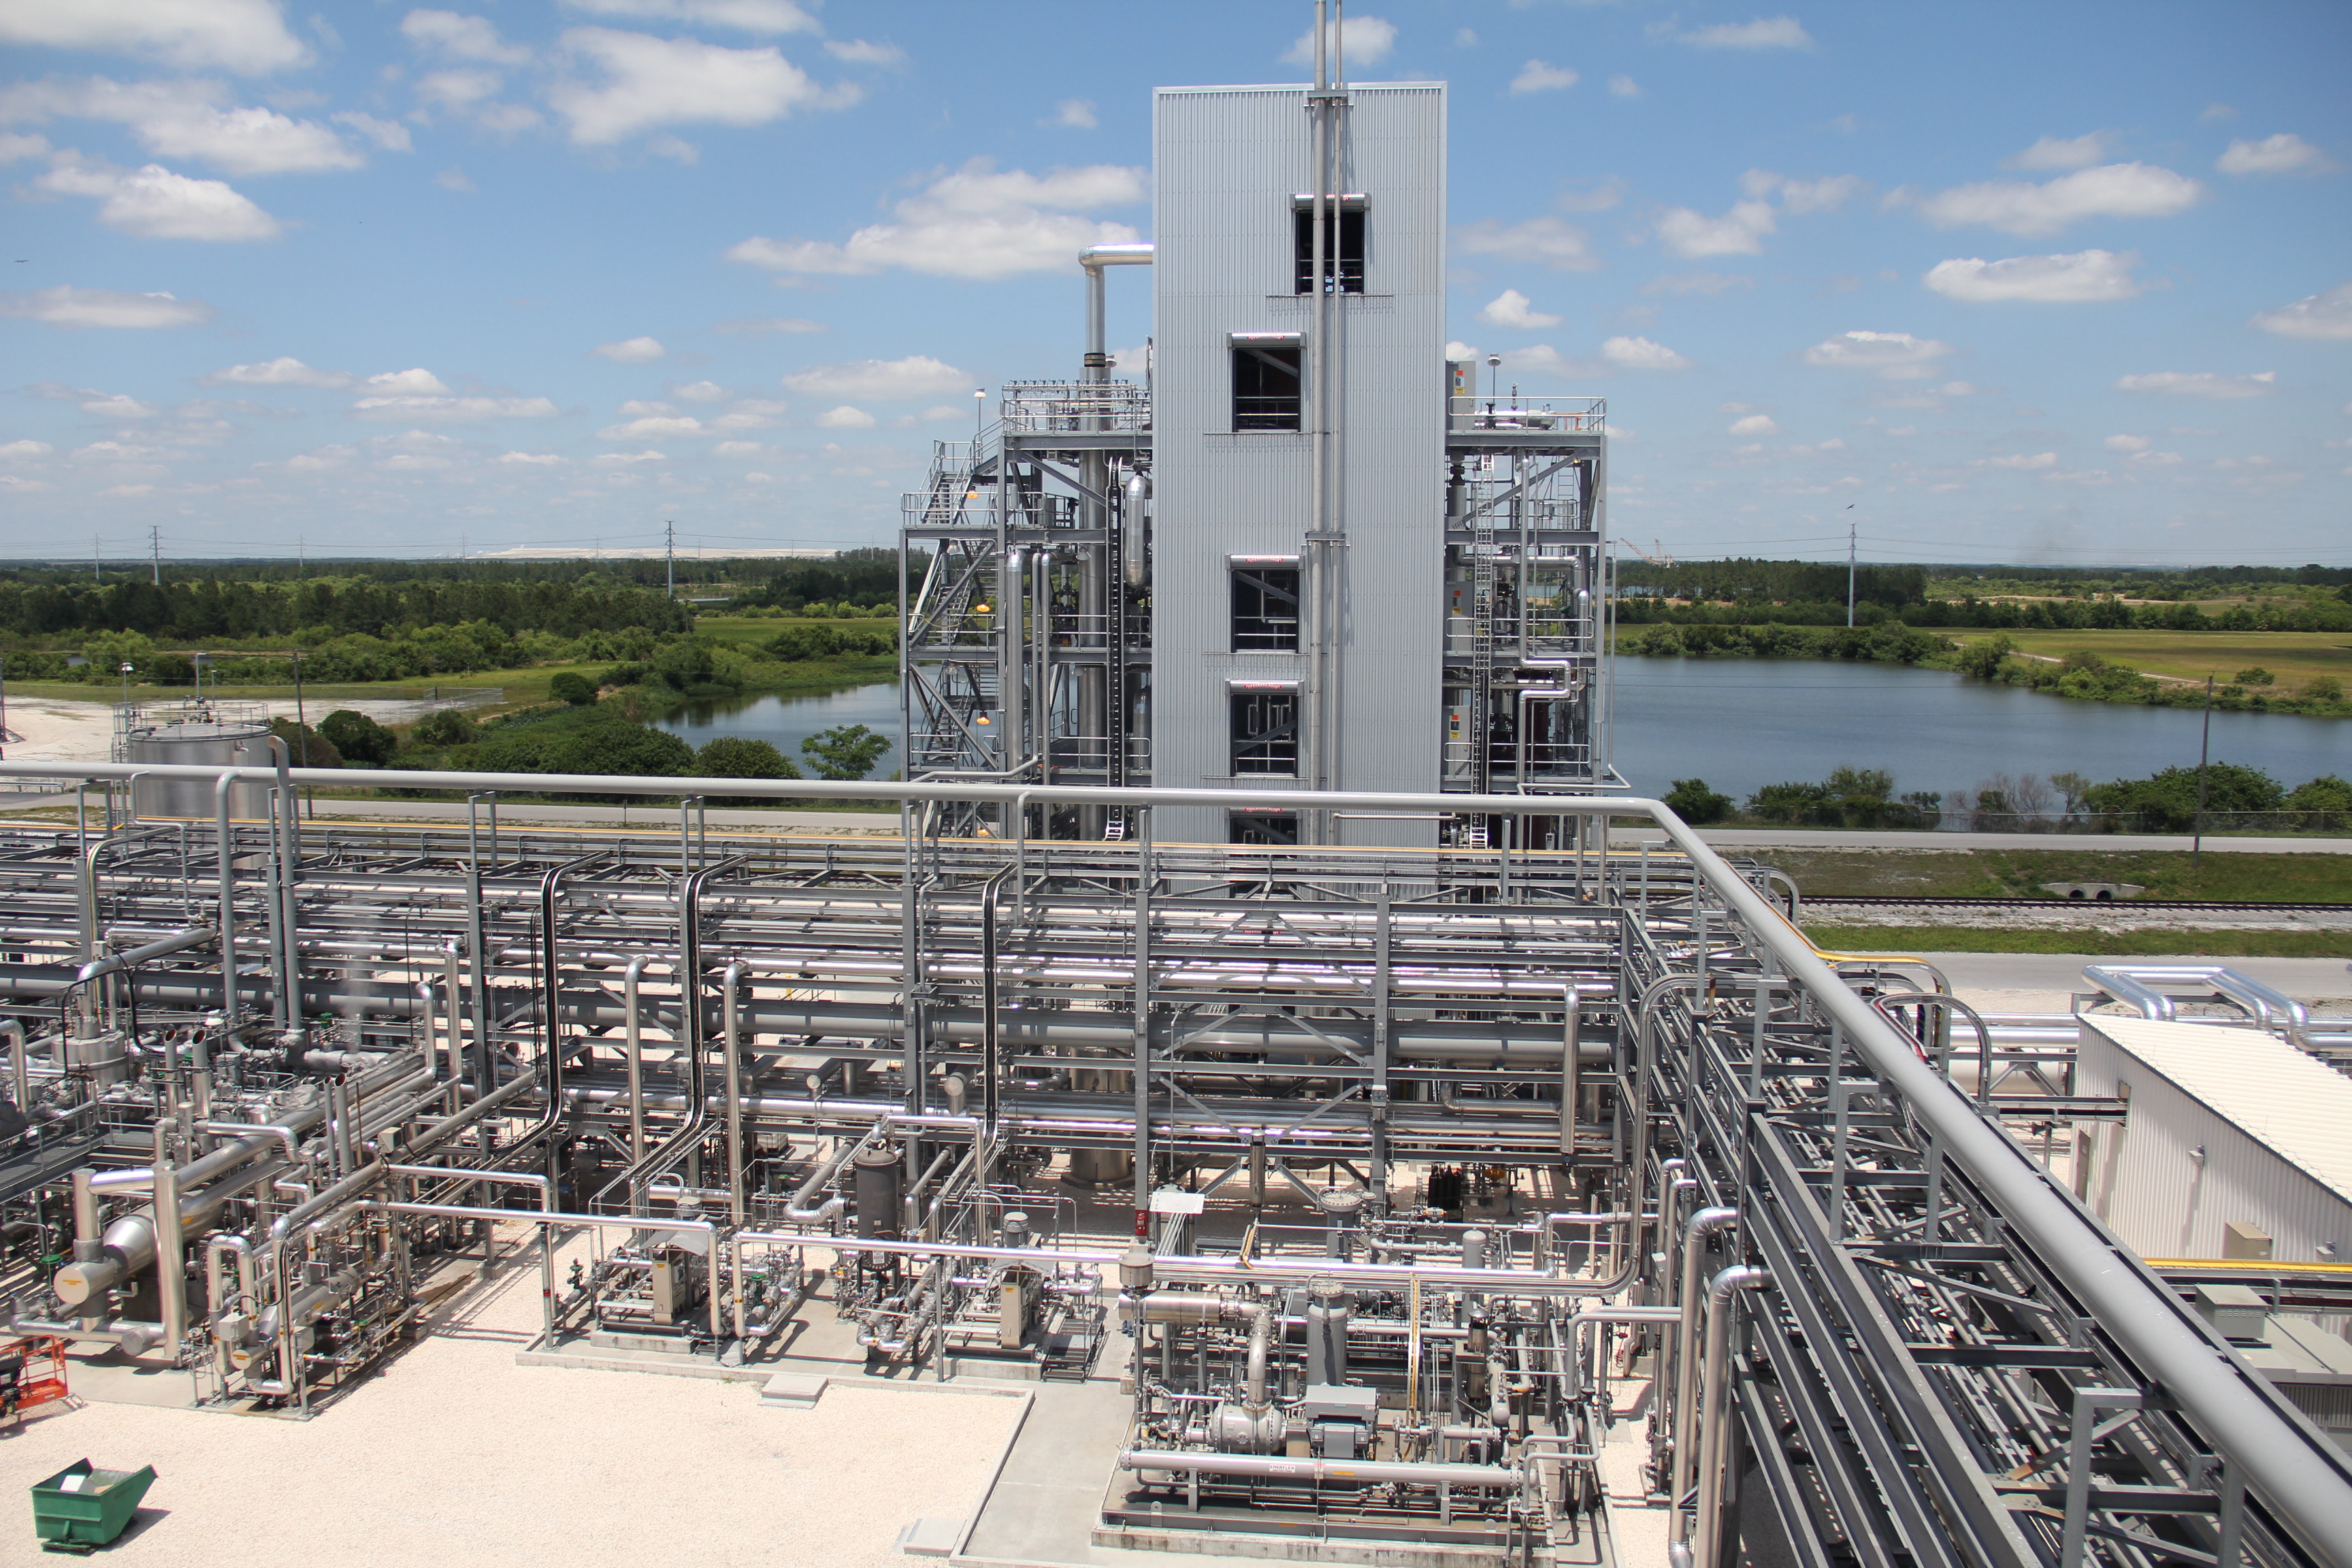 通过使含硫气体流在高温下得到净化，先进的WDP技术能够利用煤炭和其它高硫原料生产更加清洁的能源和化学品。(图片提供：RTI)